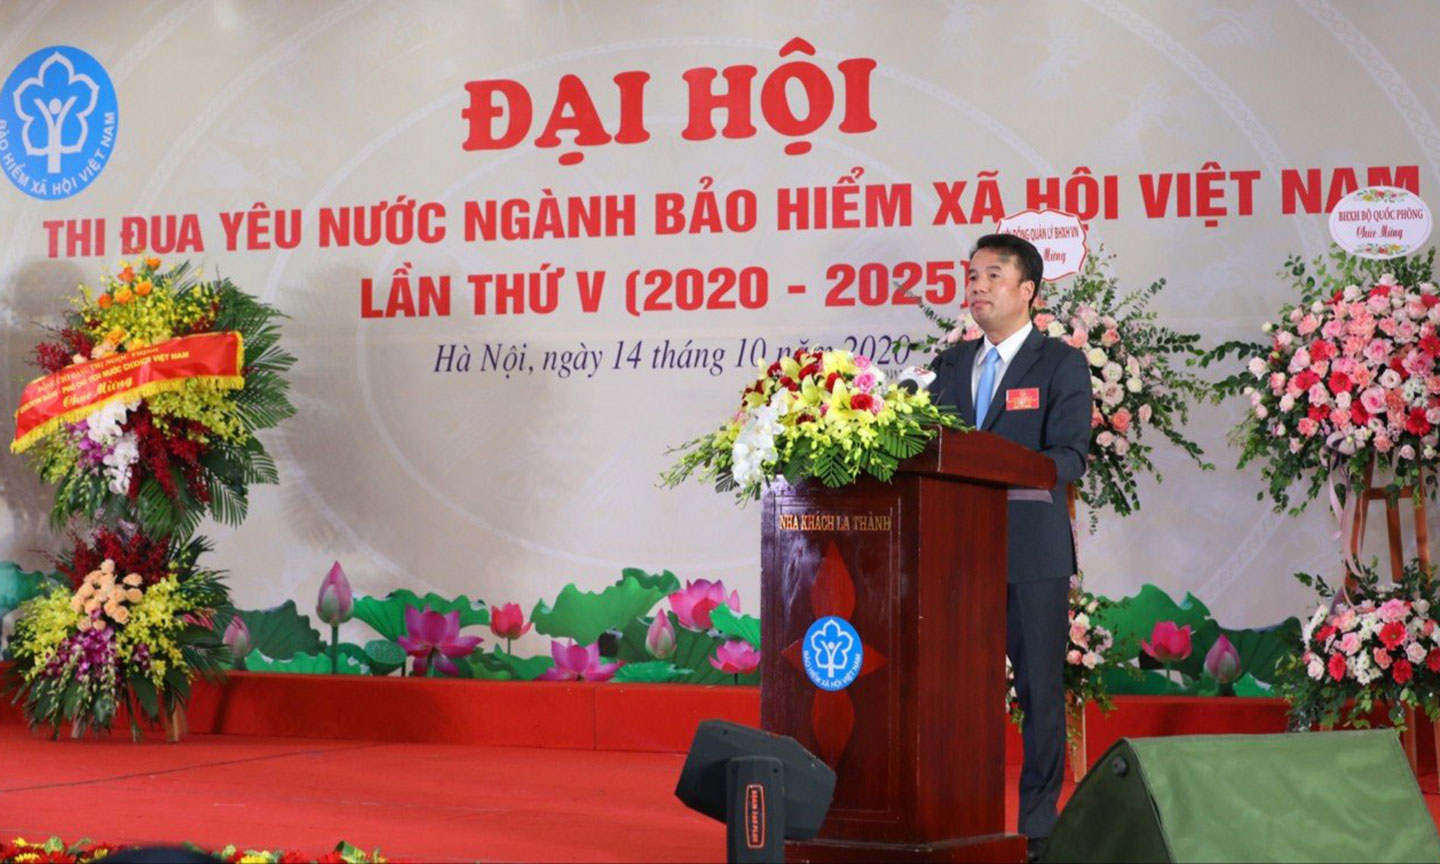 Tổng Giám đốc BHXH Việt Nam Nguyễn Thế Mạnh phát biểu khai mạc Đại hội.